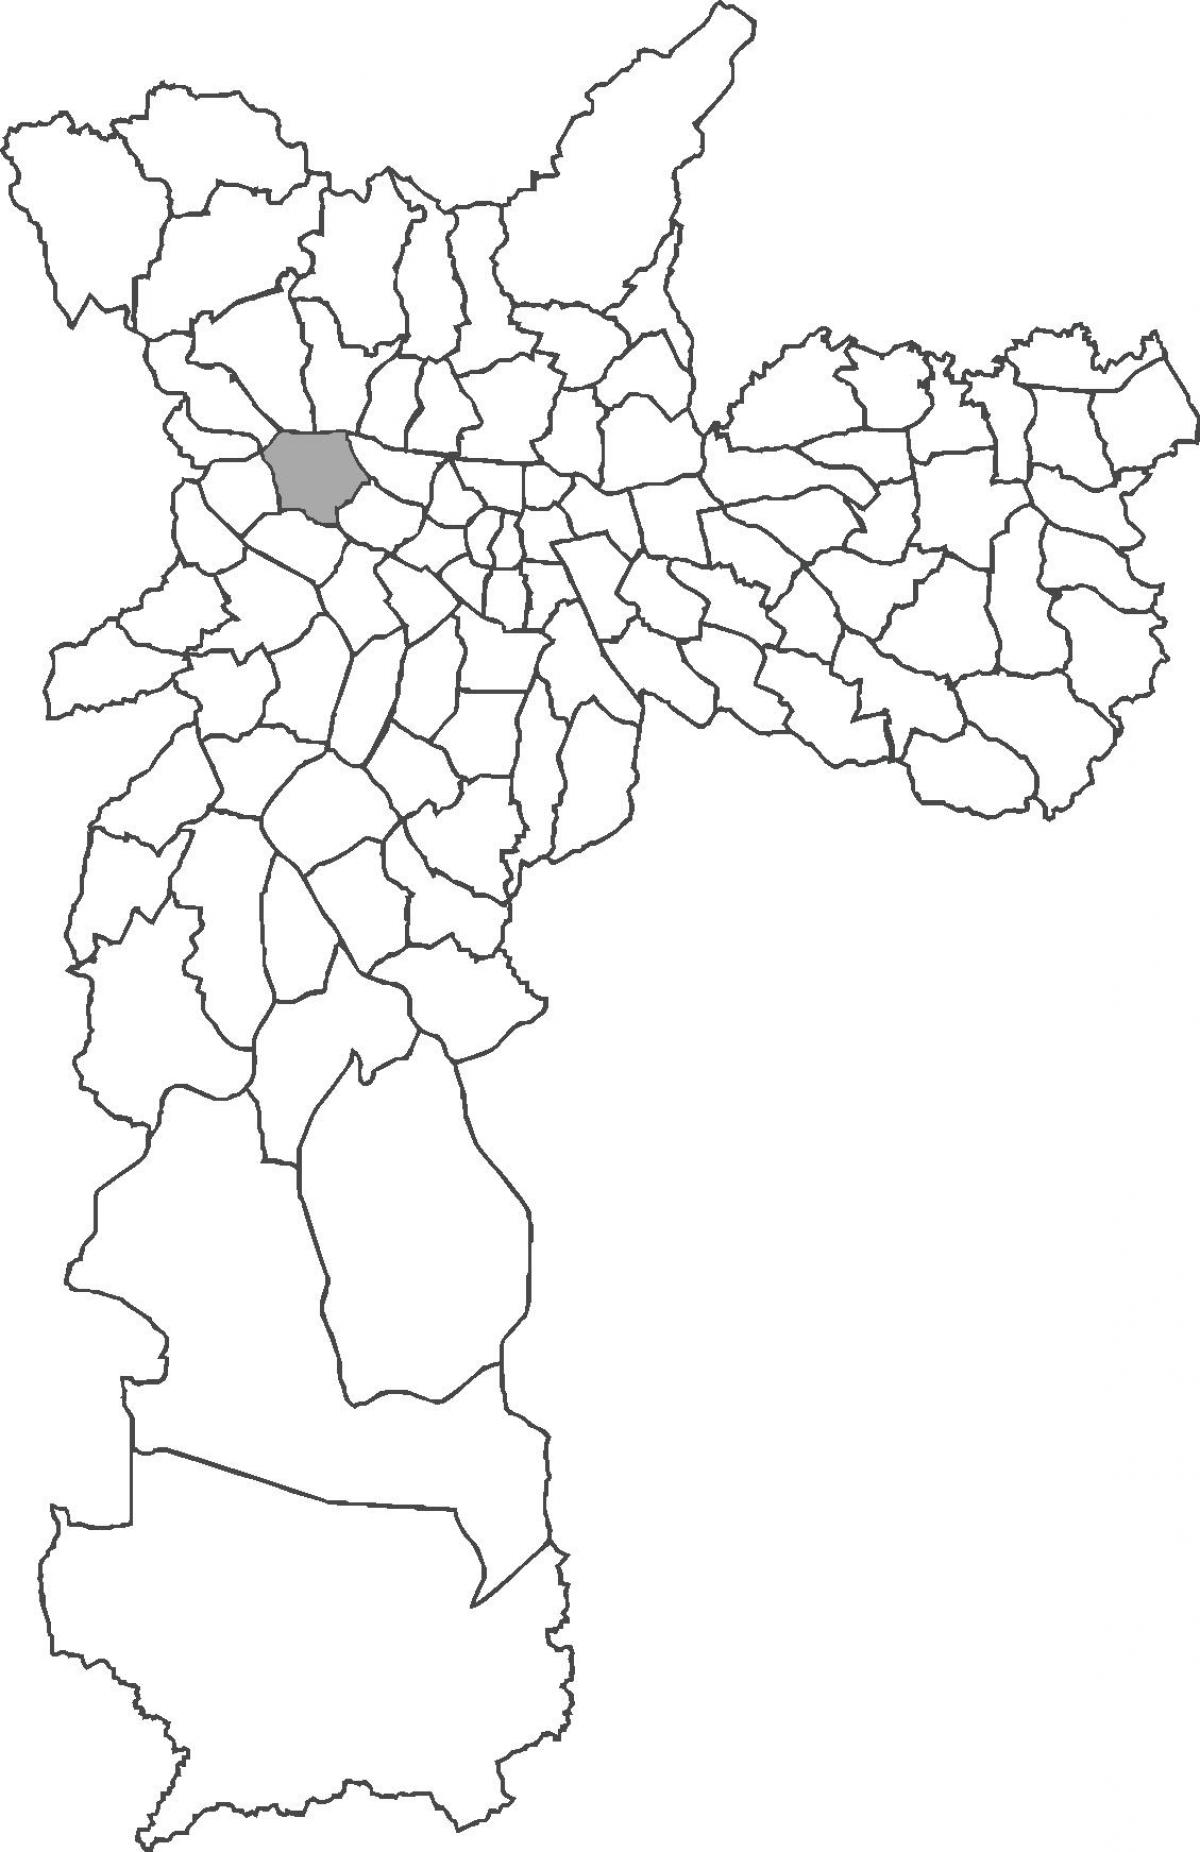 Mapa do bairro da Lapa